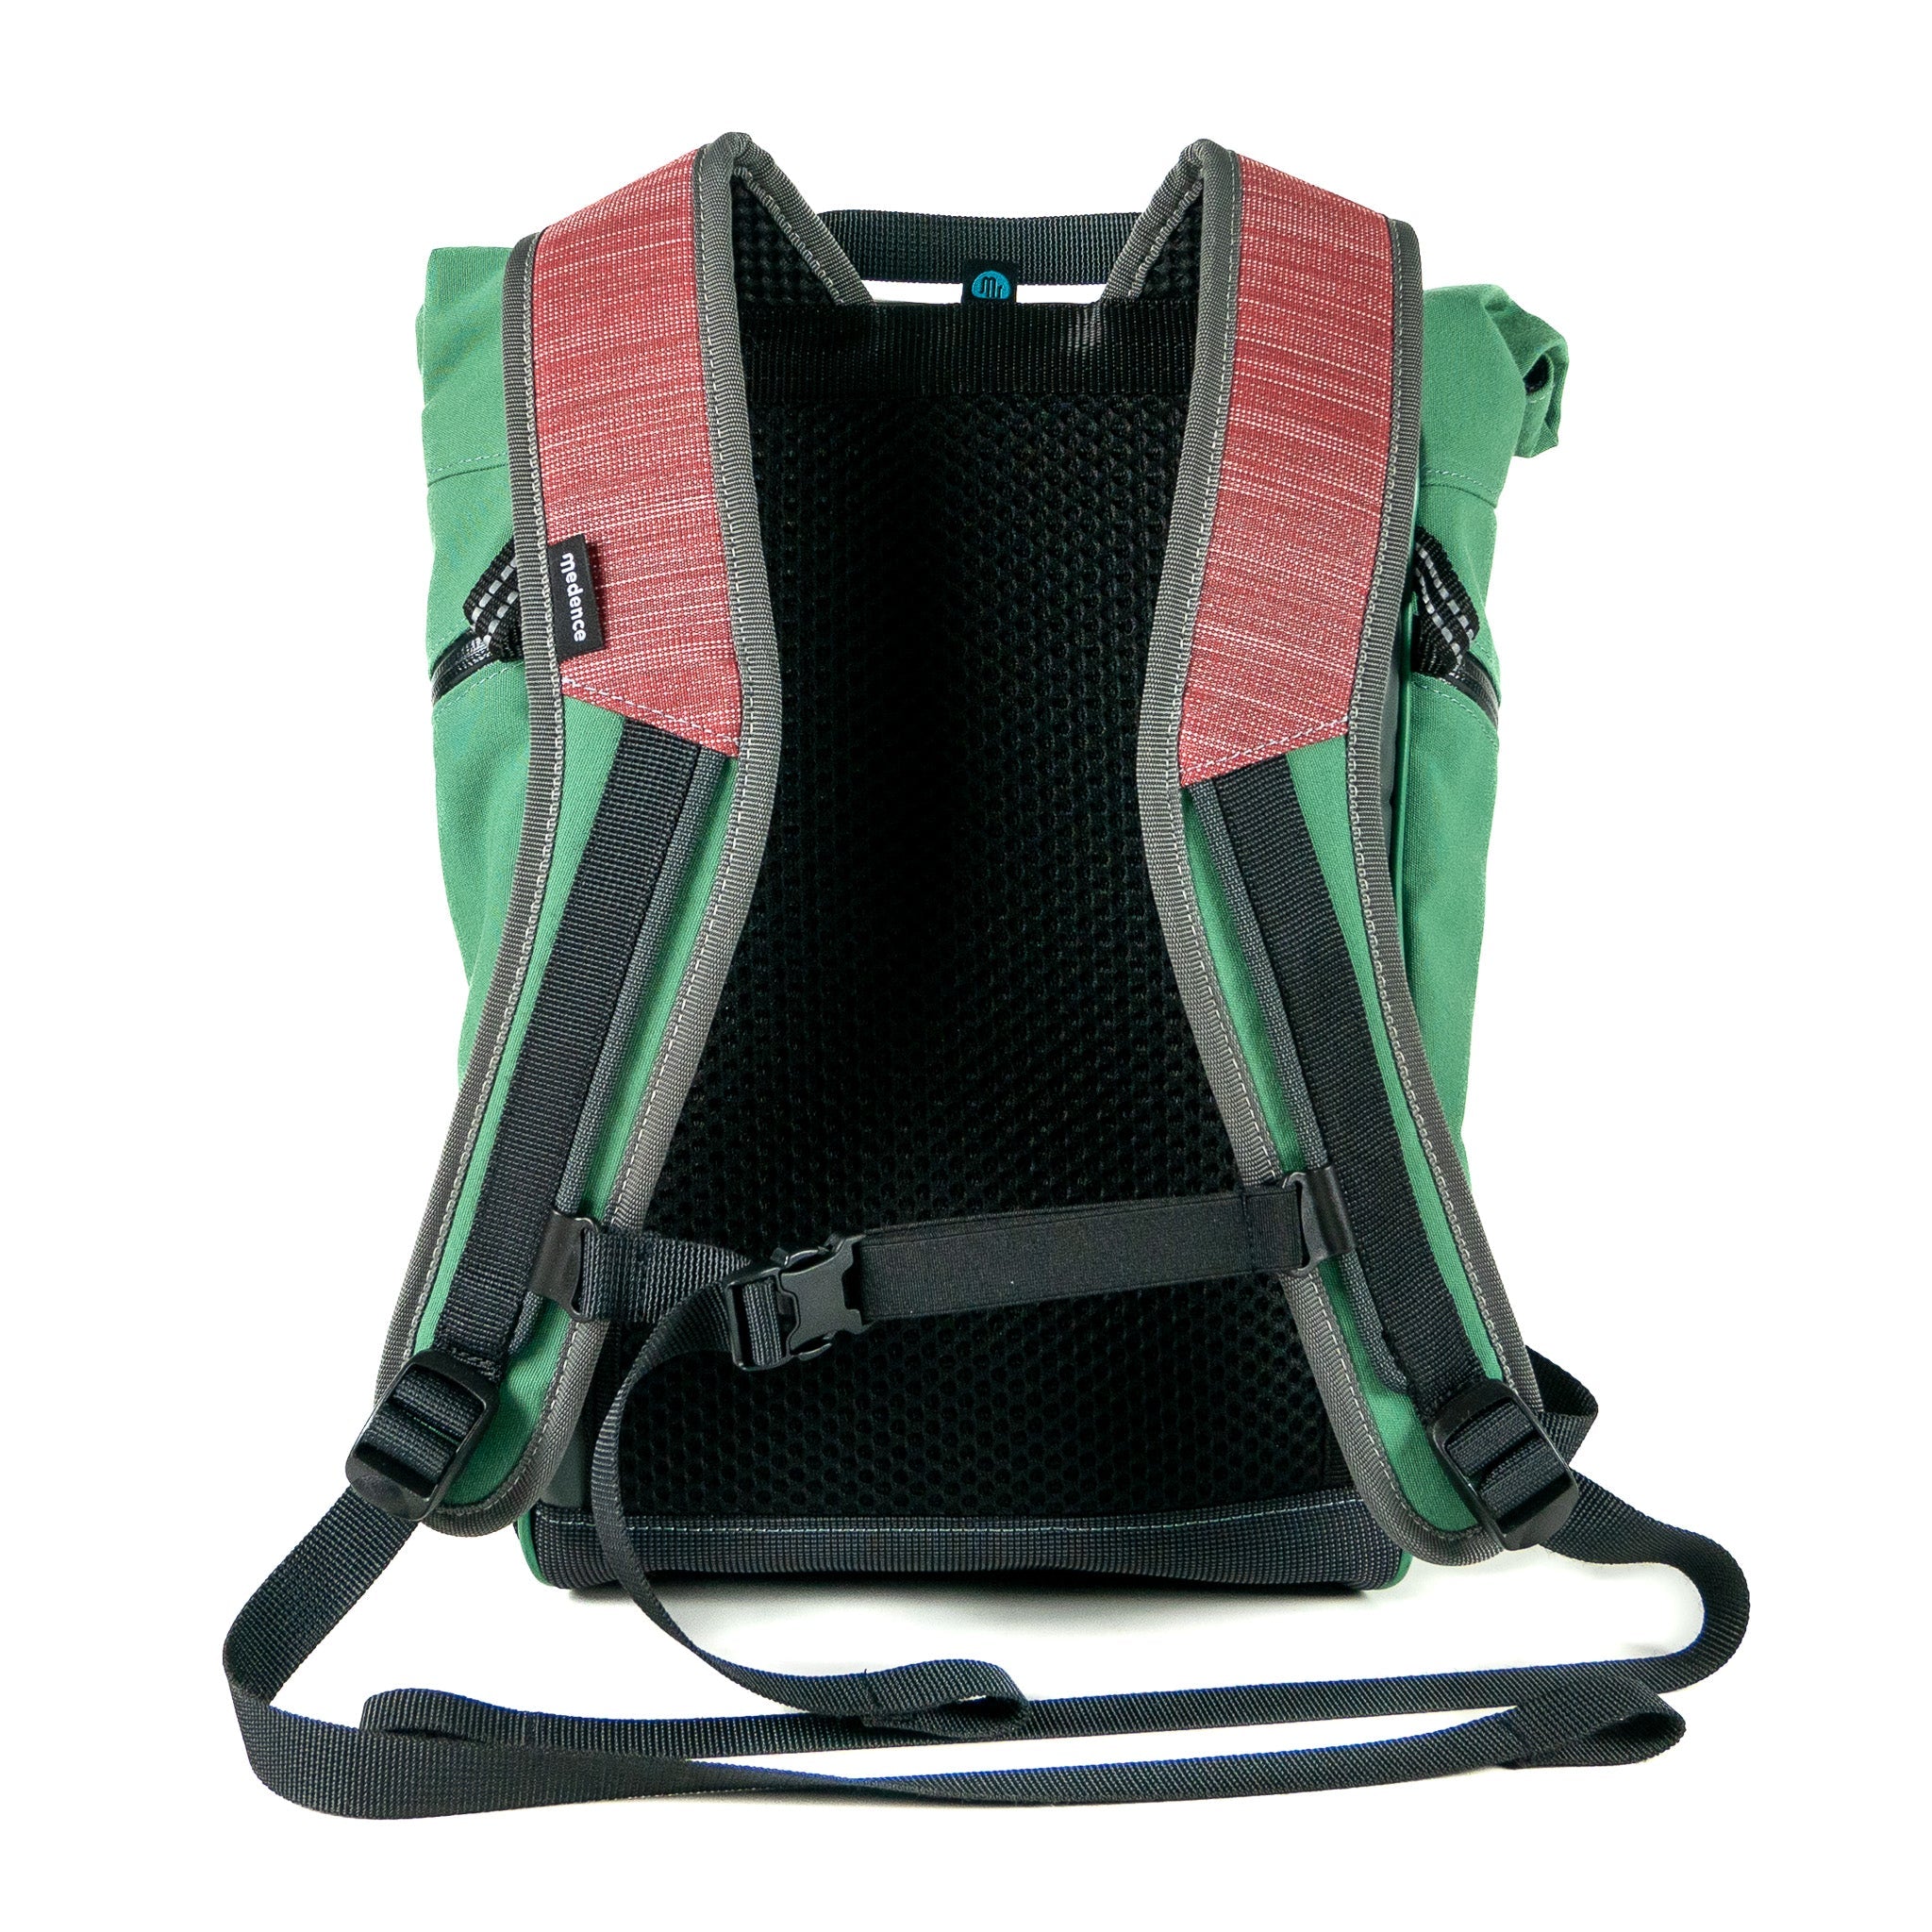 Backpack - BUDDY No. 156 - Backpack - medencebag